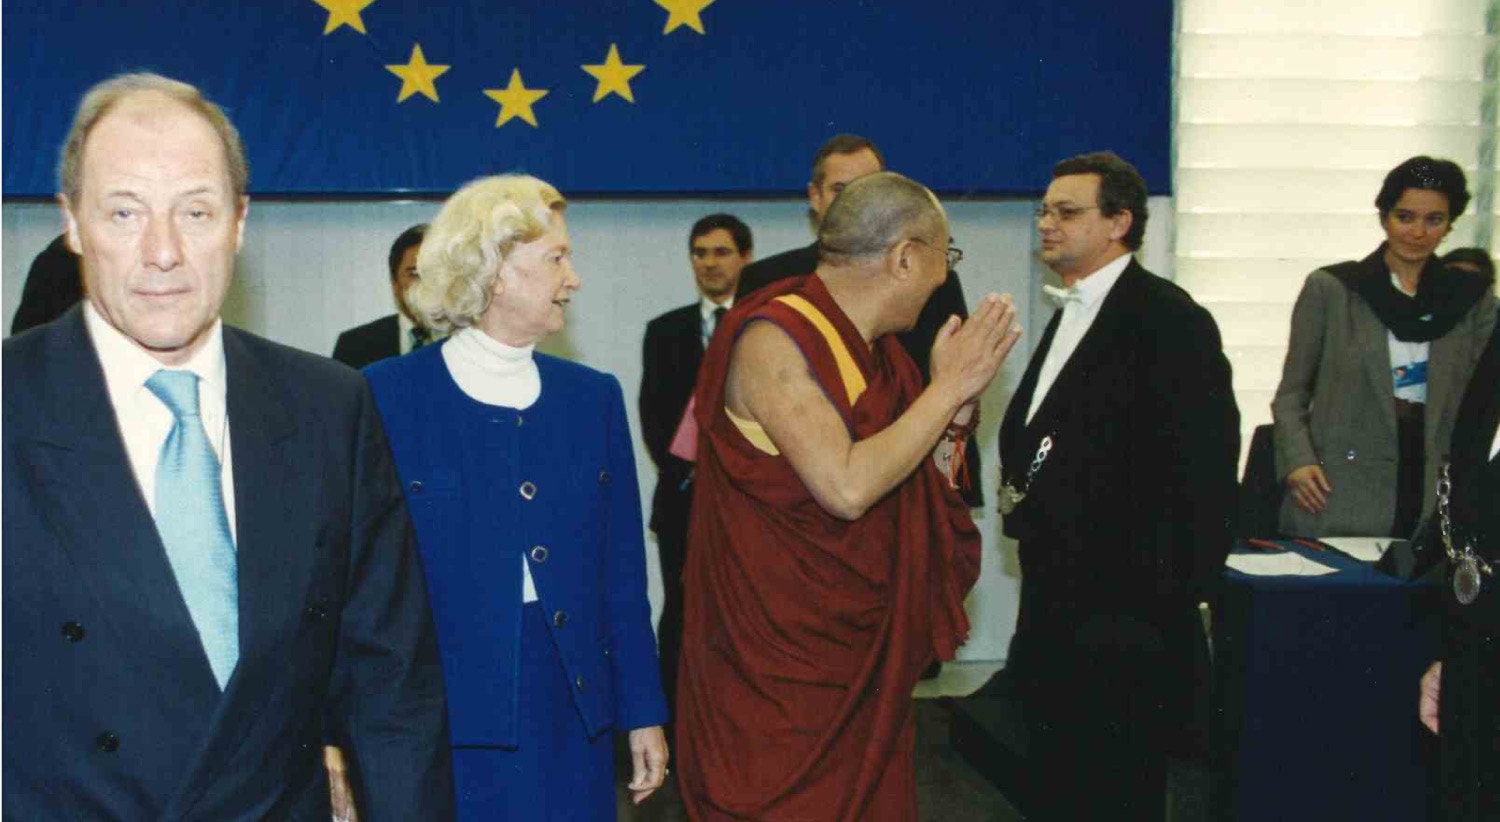  Visita oficial de Dalai Lama ao Parlamento Europeu em 1990 / Fonte: Arquivo Pessoal 